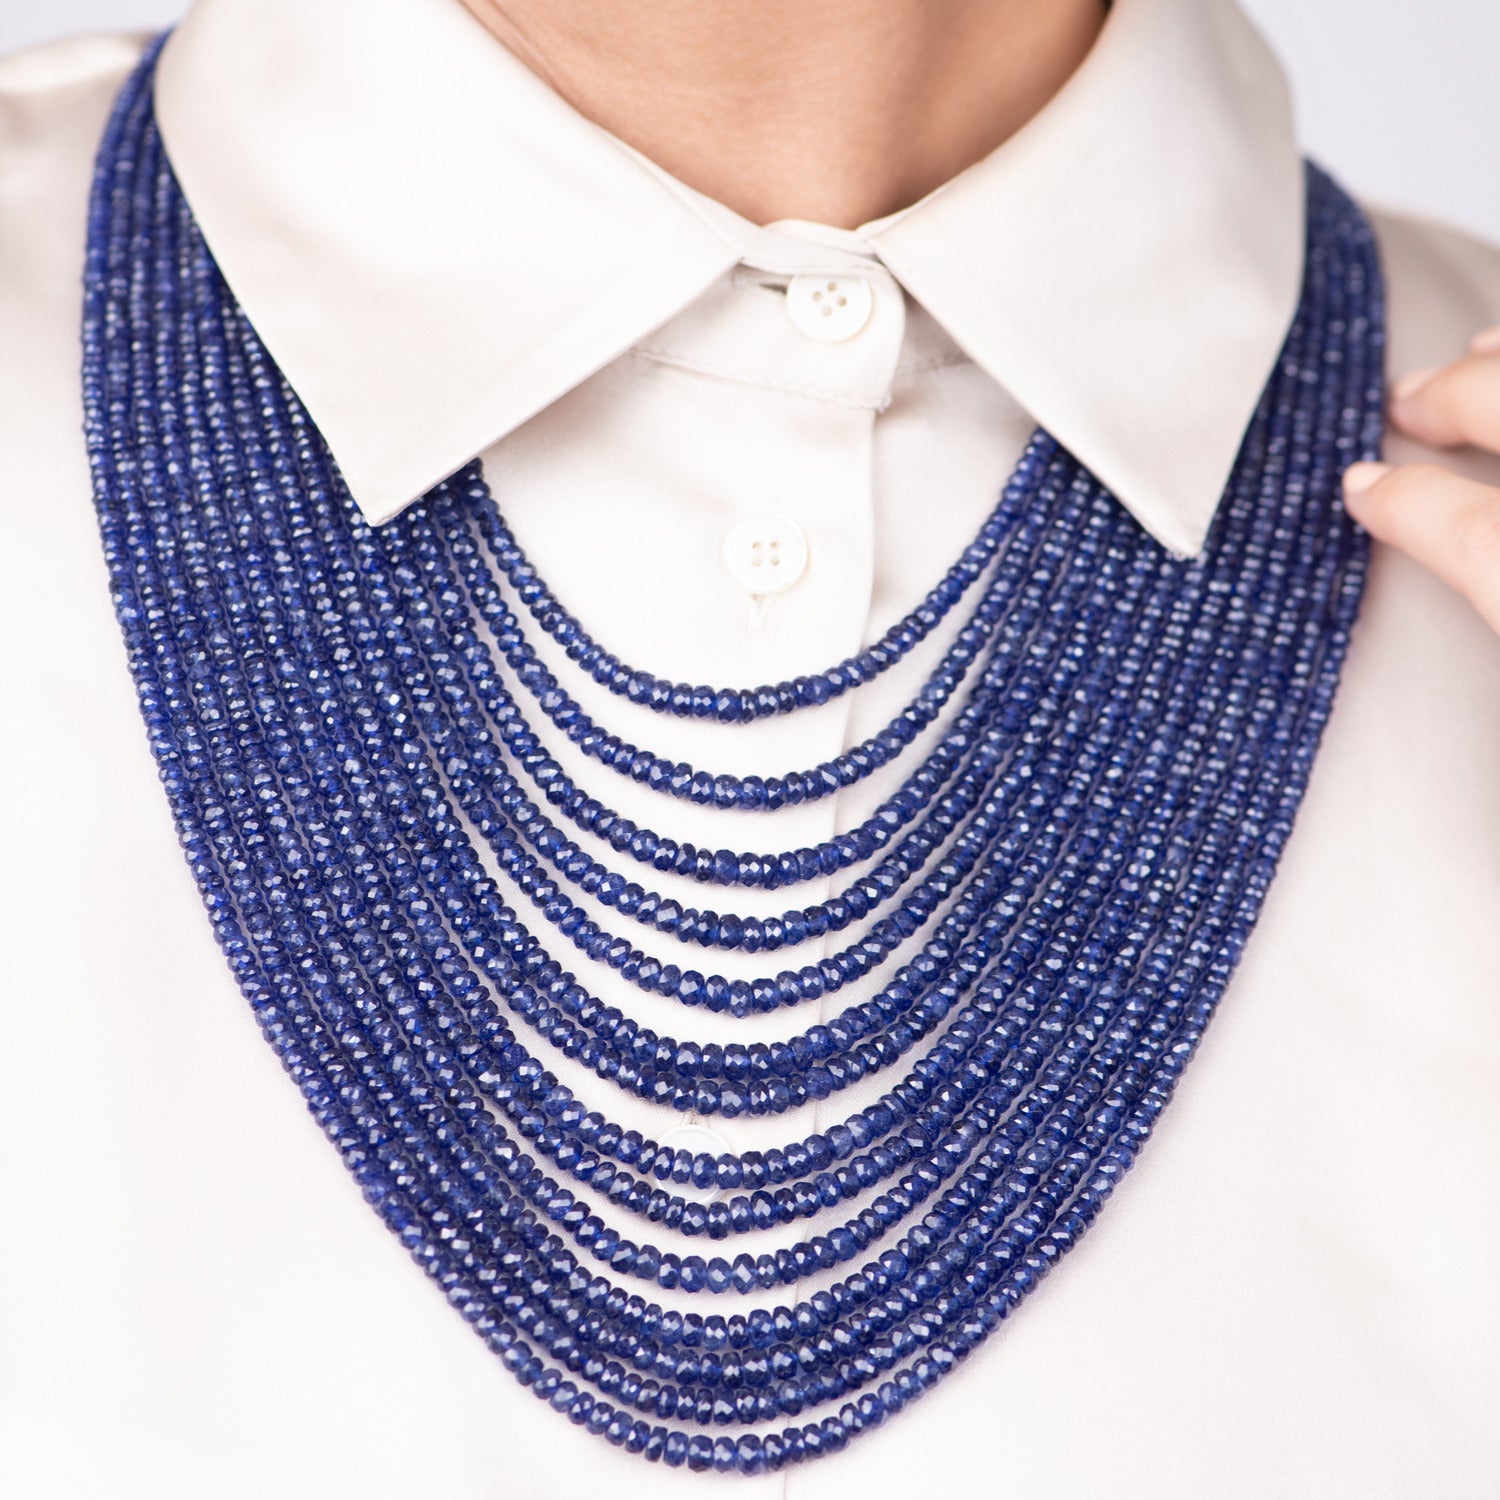 Deep Blue Splendor: Fourteen-Line Sapphire Necklace